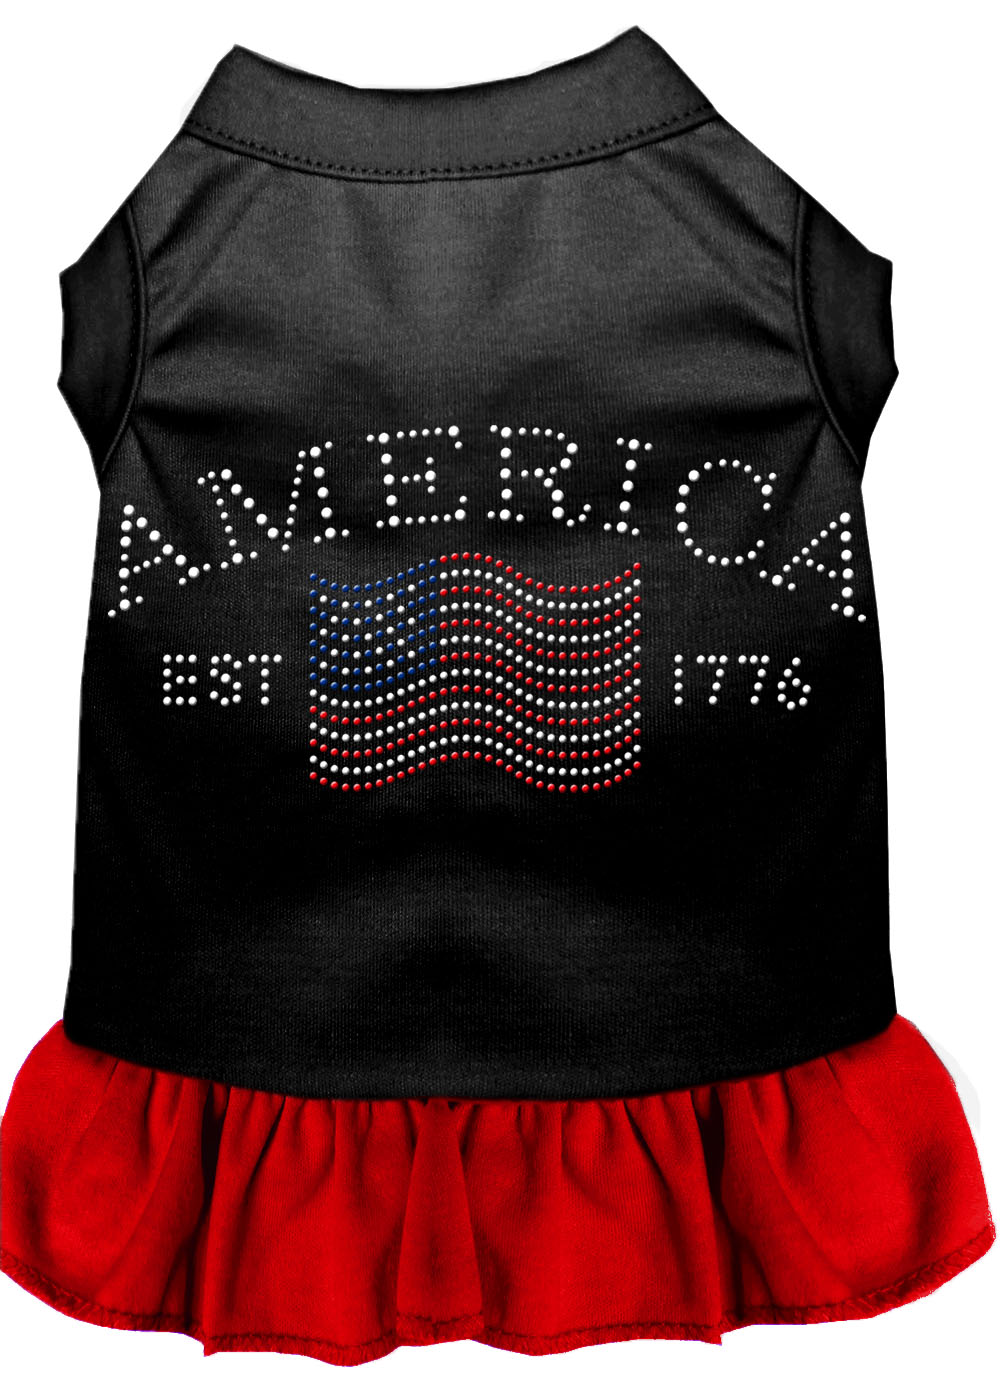 Classic America Rhinestone Dress Black with Red XXXL